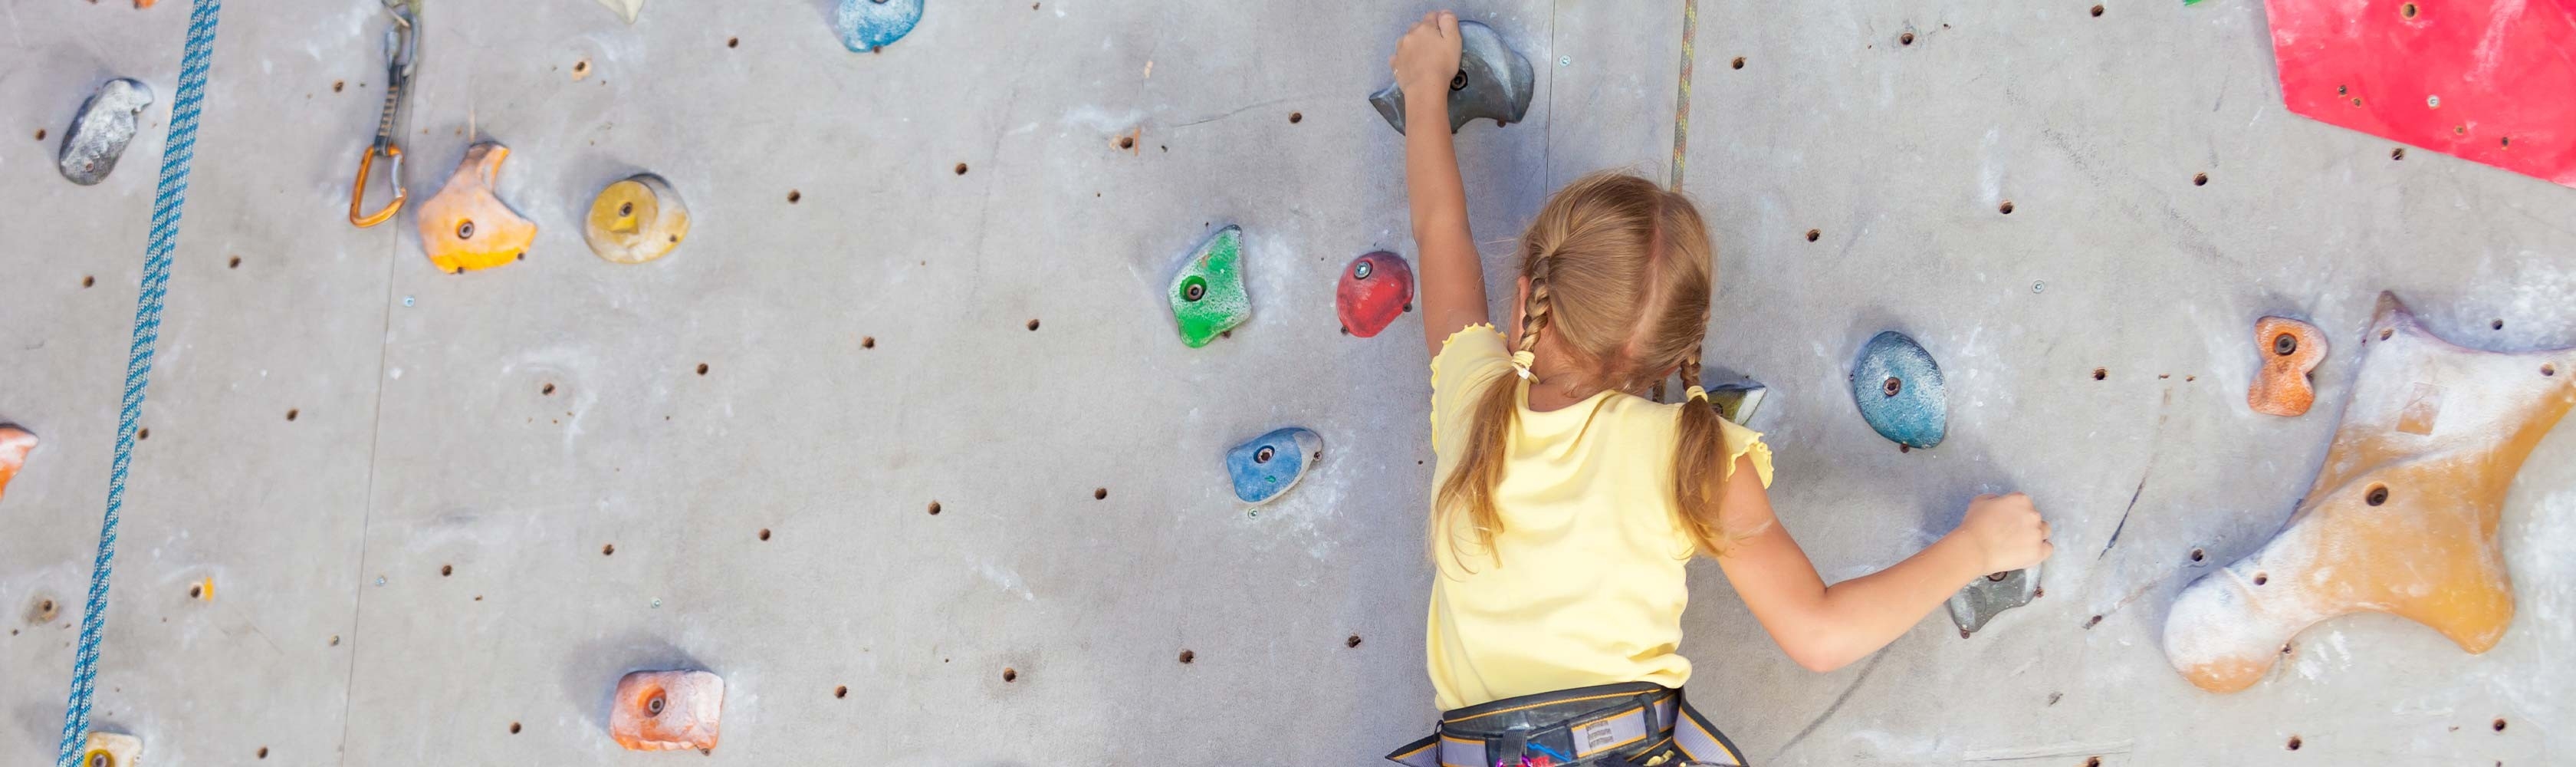 Mädchen klettert Indoor an einer Kletterwand